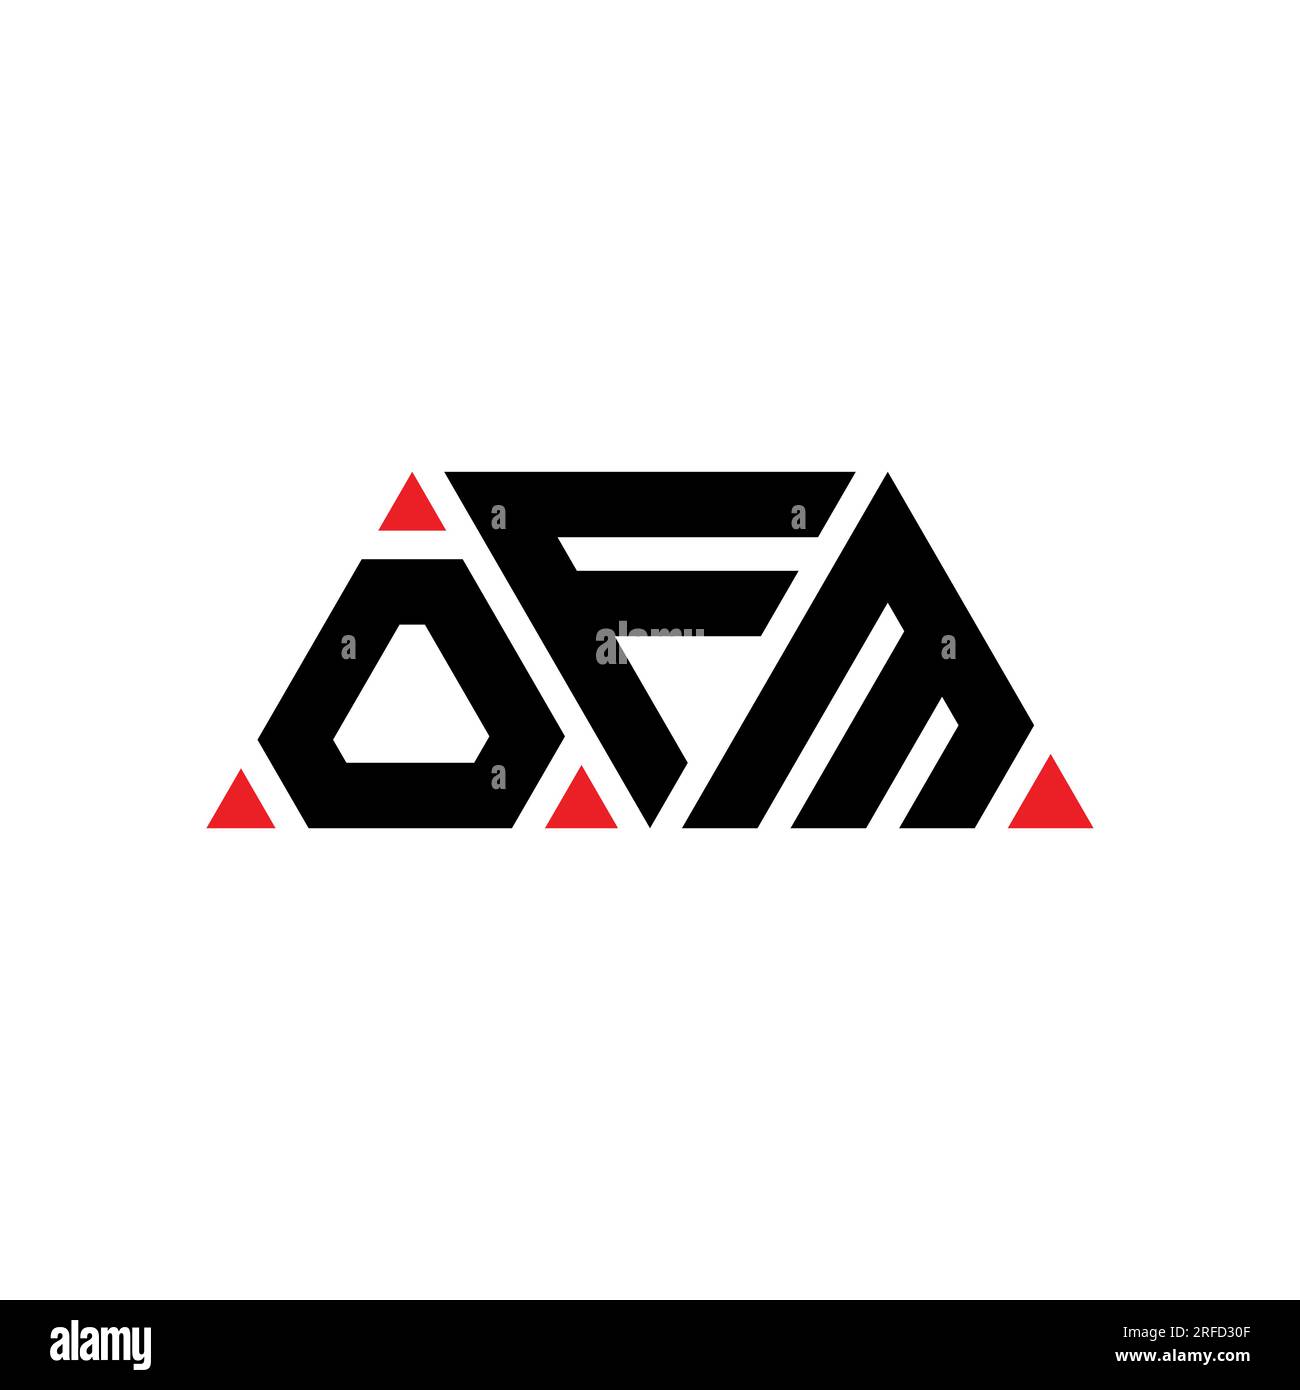 Ofm logo -Fotos und -Bildmaterial in hoher Auflösung